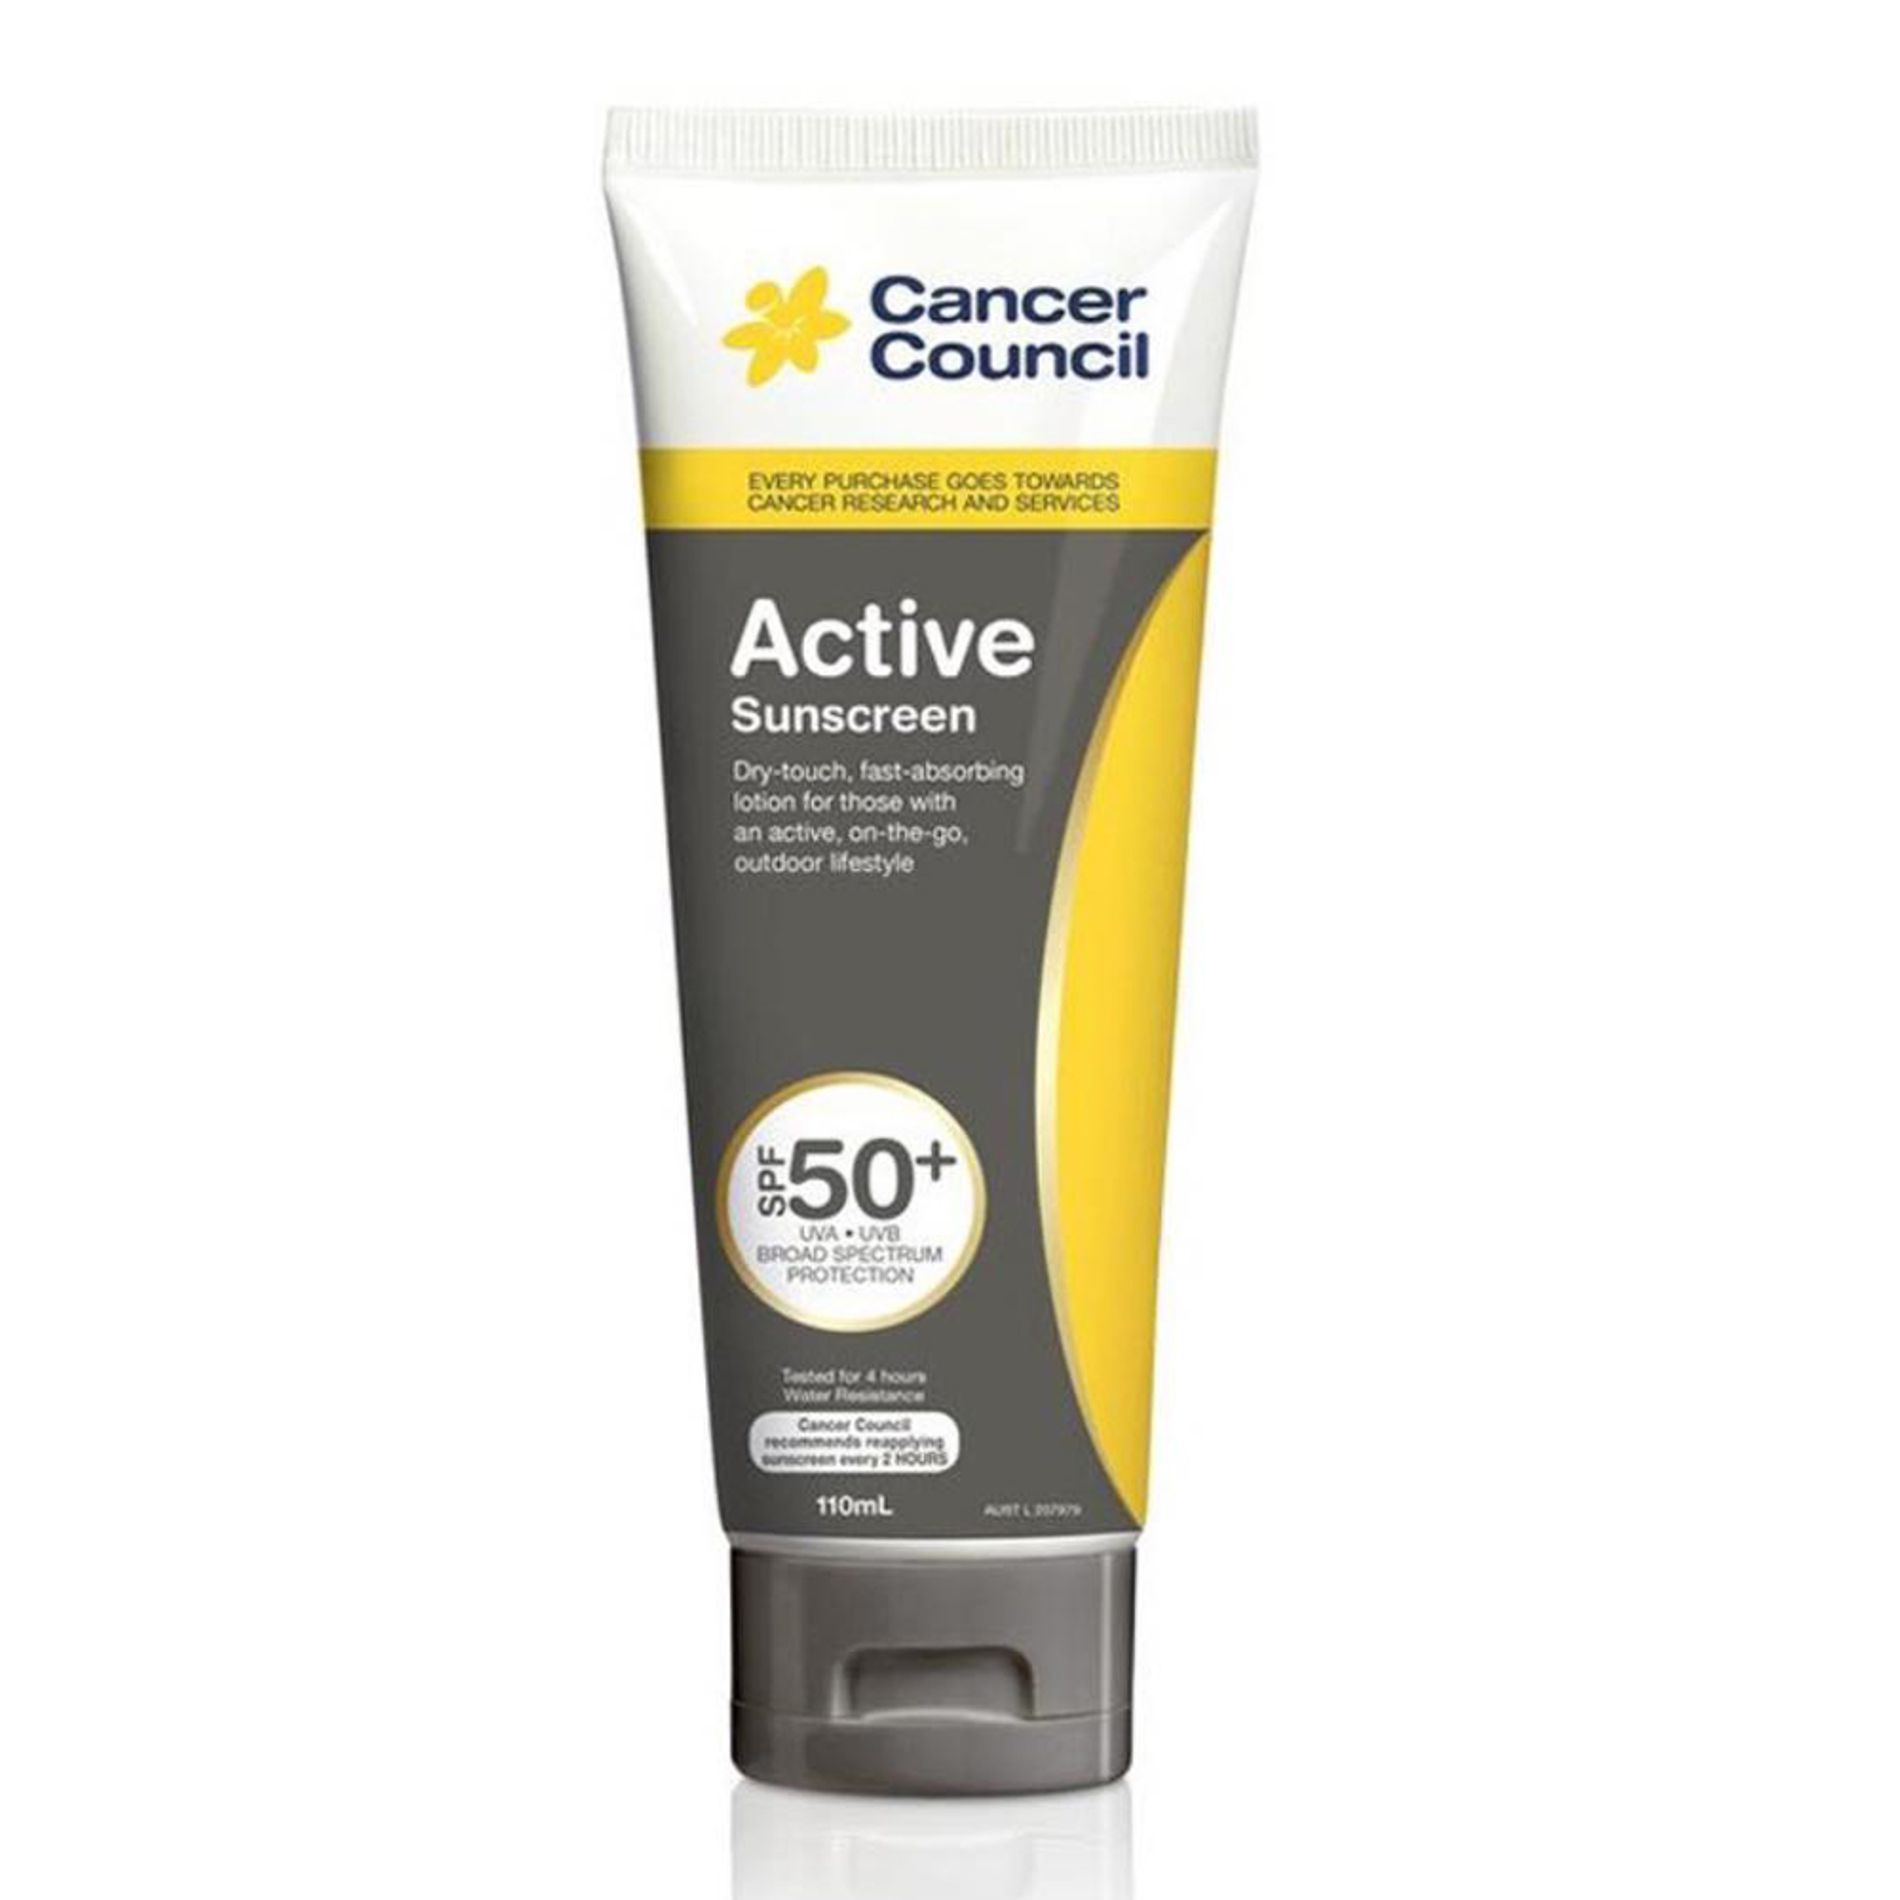 kem-chong-nang-cancer-council-active-sunscreen-grey-spf50-4